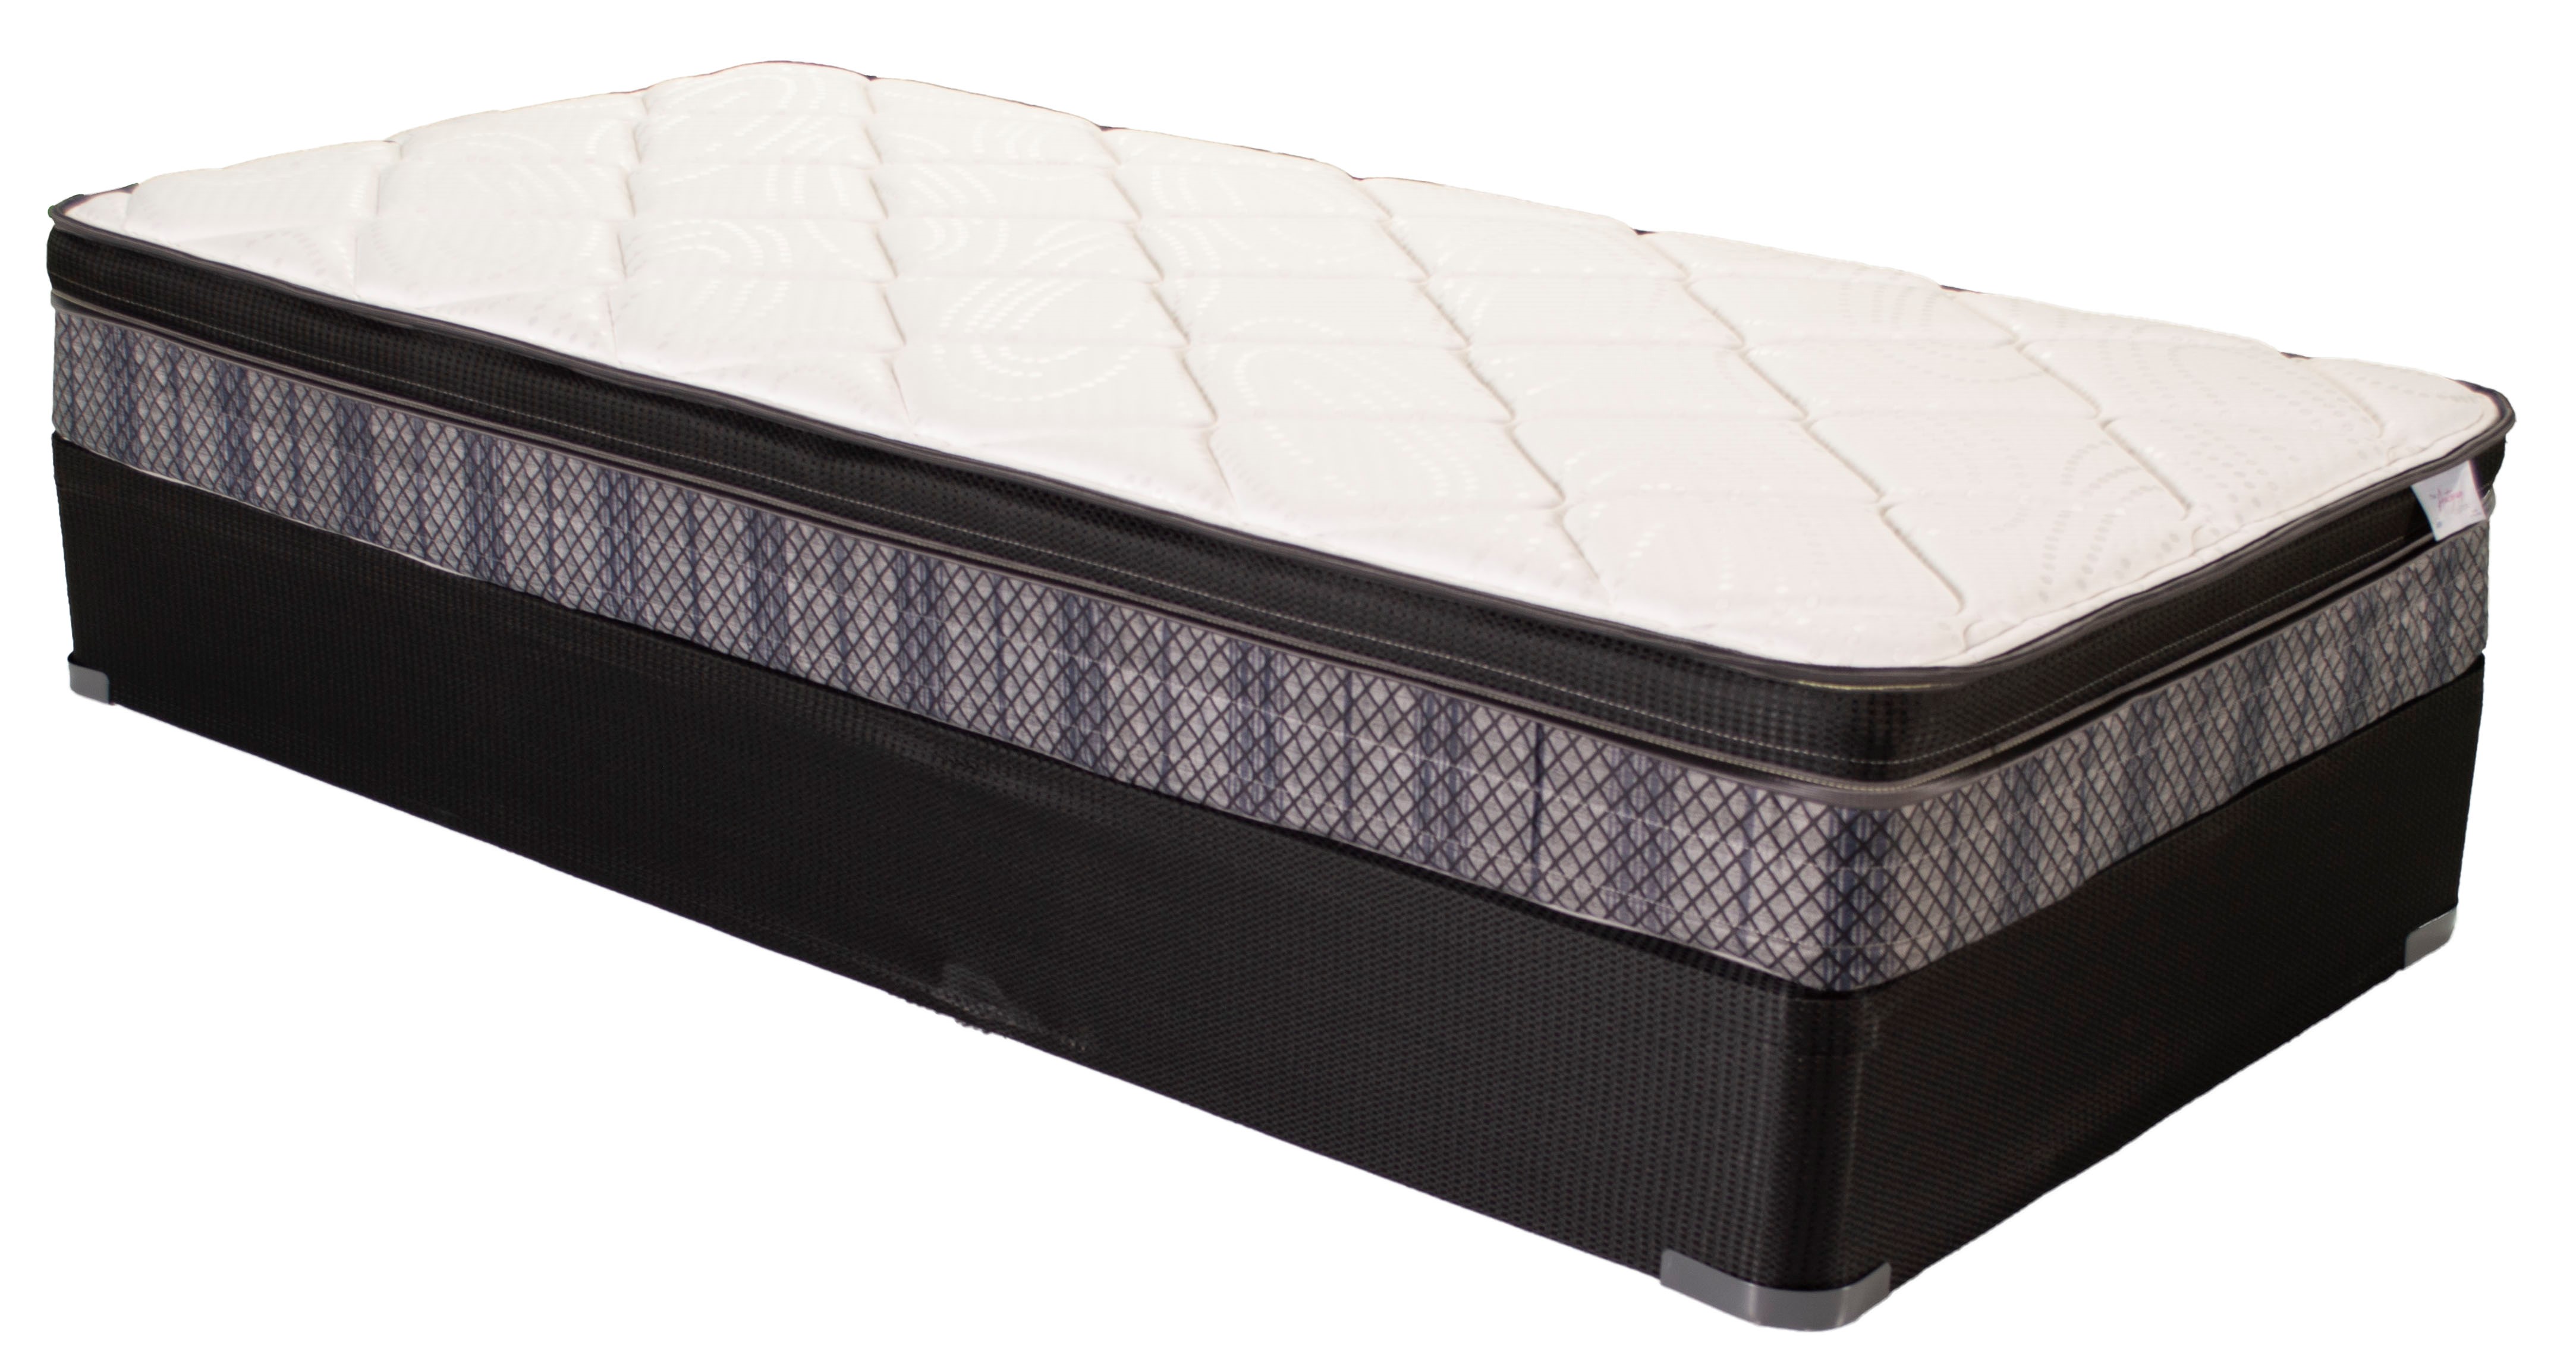 q furniture and mattress beaumont tx 77706